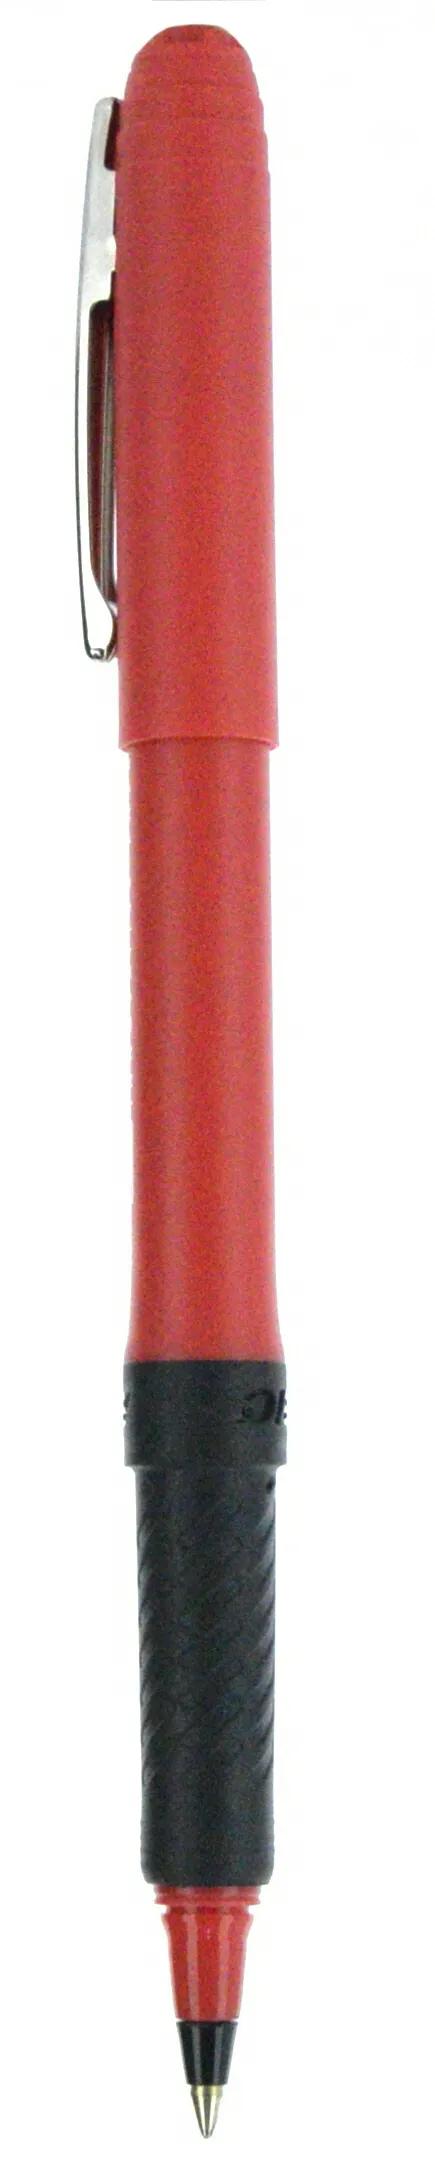 BIC® Grip Roller Pen 127 of 147